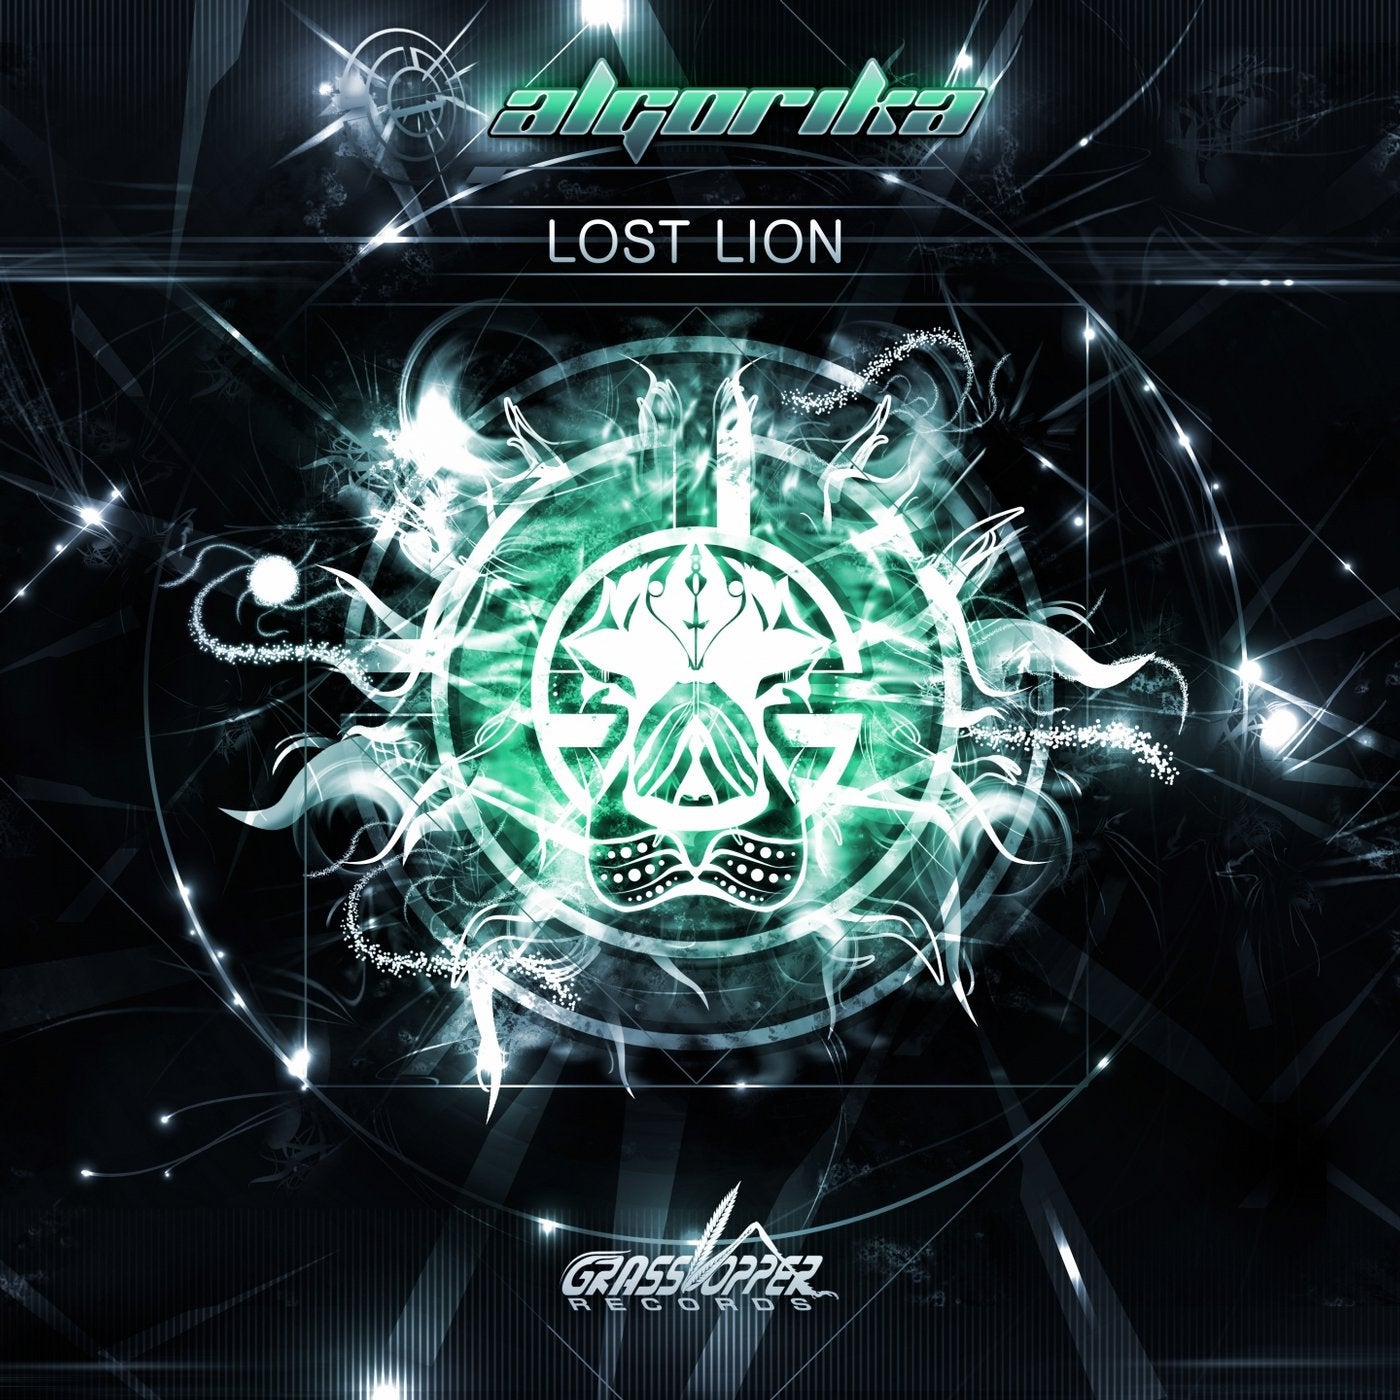 Lost Lion